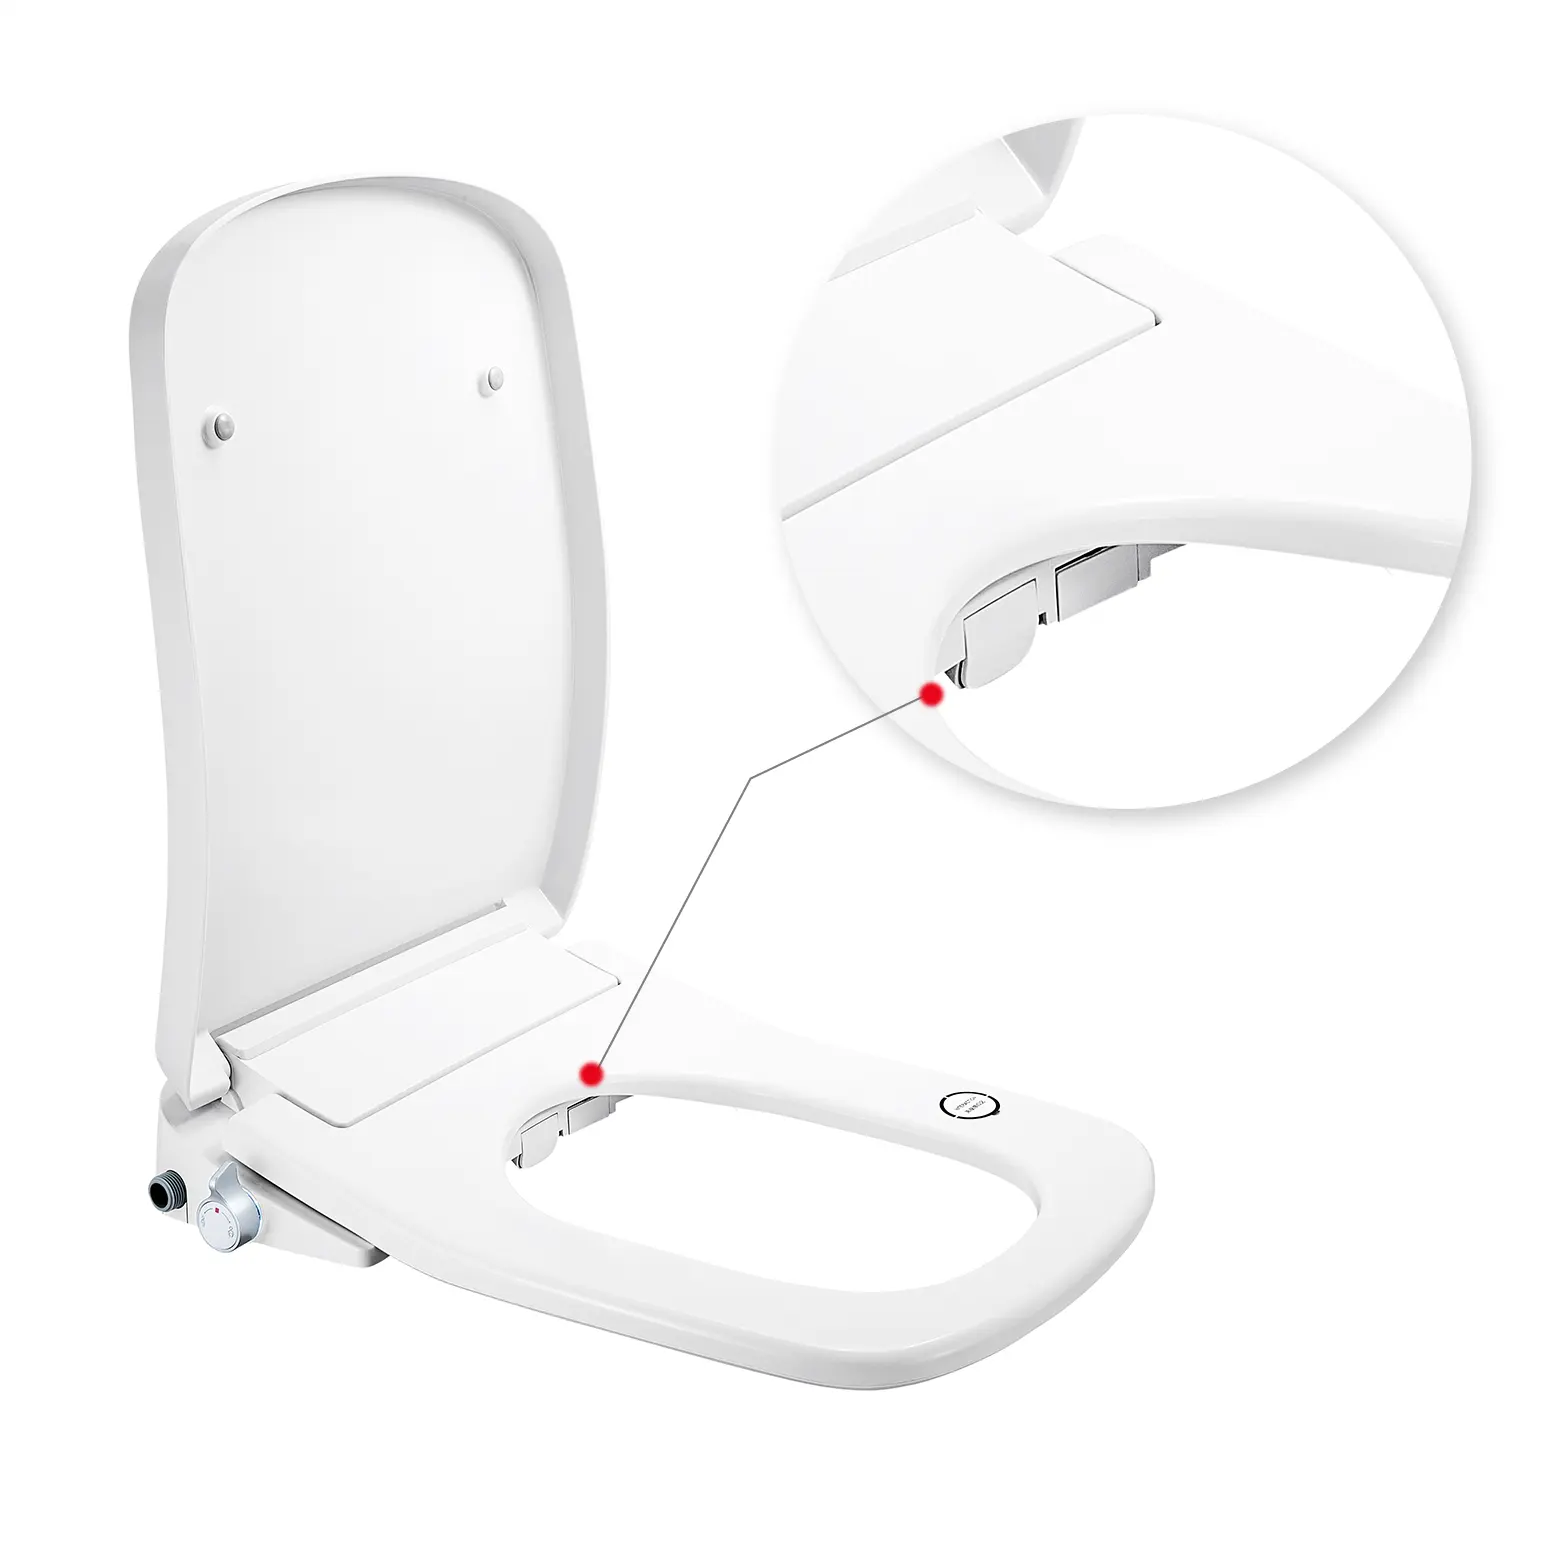 Vendita calda di alta qualità riscaldamento istantaneo dell'acqua luce notturna smart sanitari quadrato uf smart toilet seat